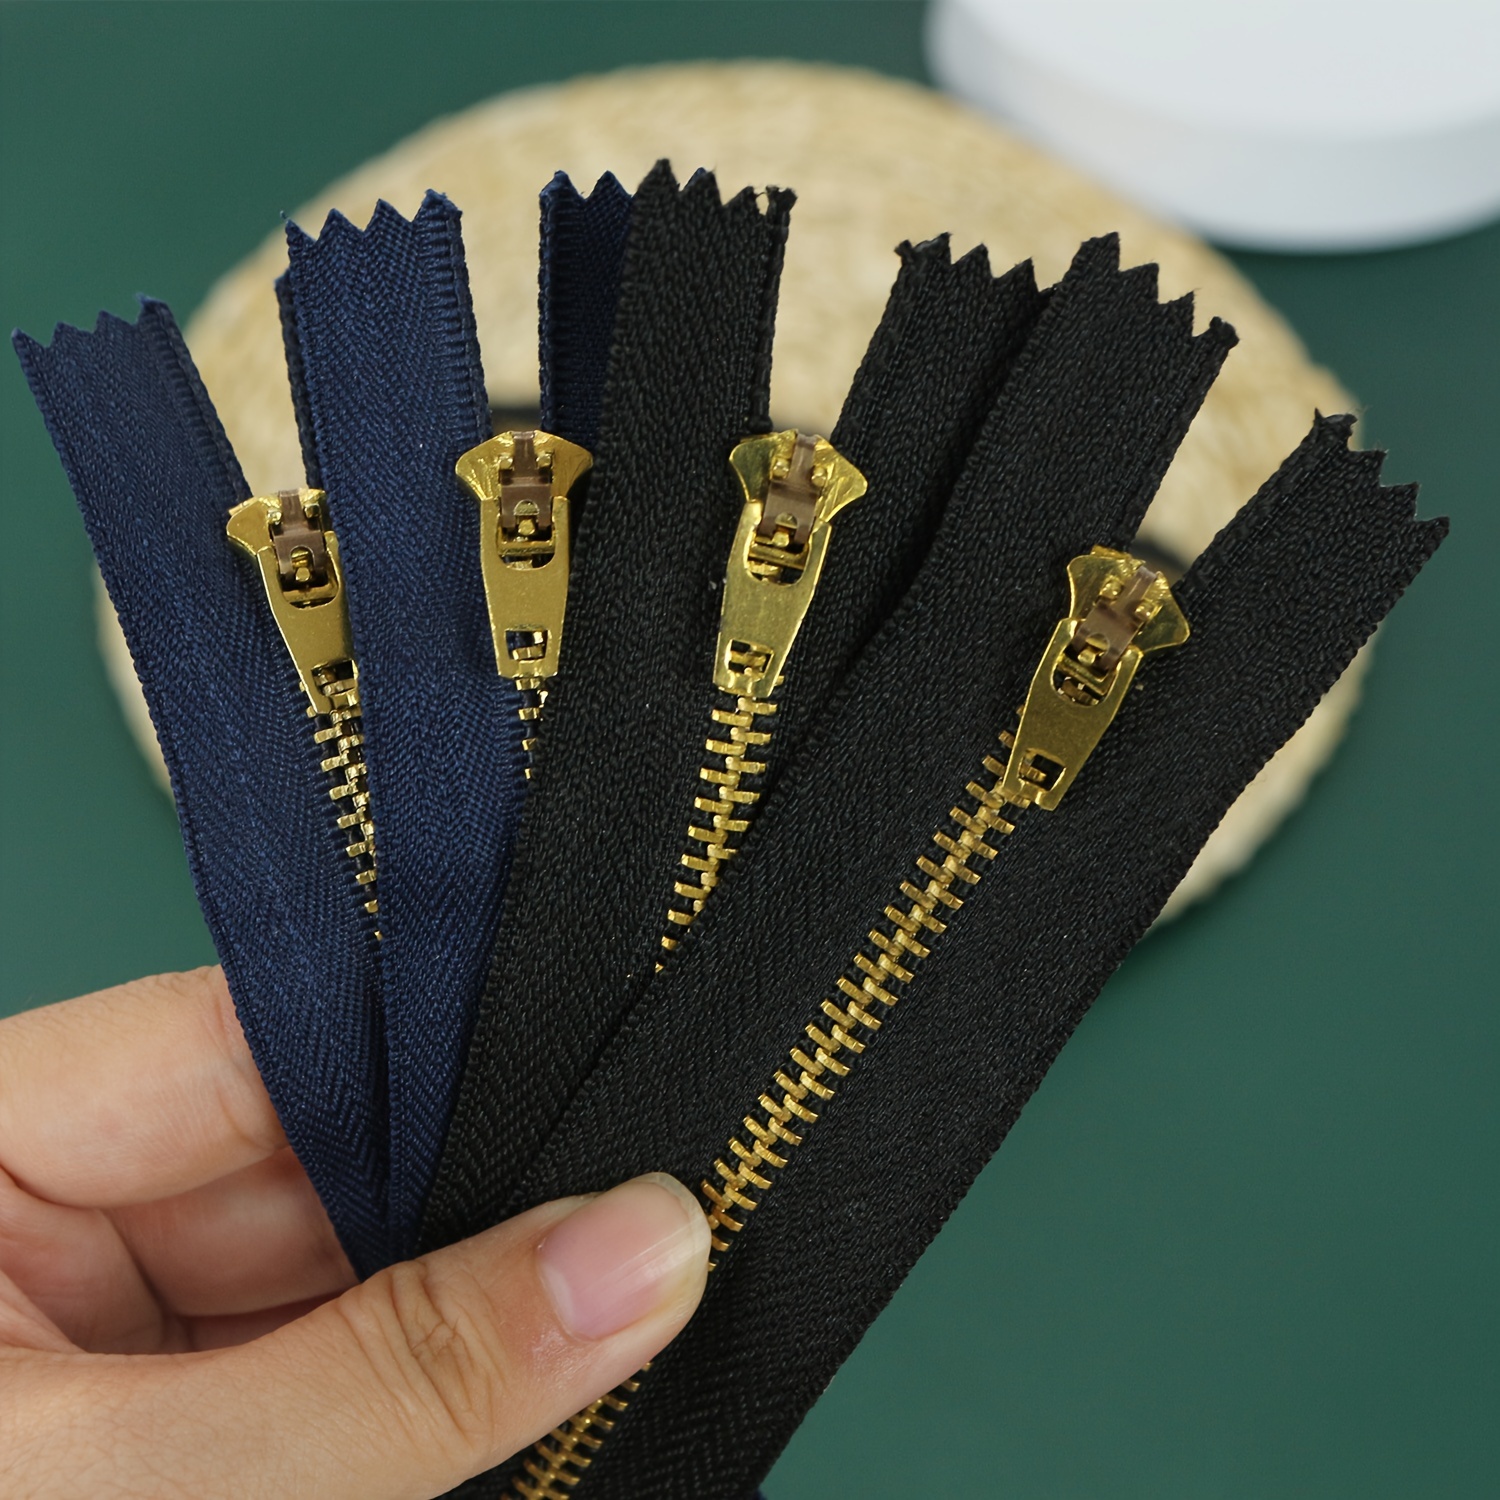 YaHoGa 10pcs 30 inch (76cm) Separating Jacket Zippers for Sewing Coat Jacket Zipper Heavy Duty Plastic Zippers Bulk 10 Colors Mixed (1pcs per Color)